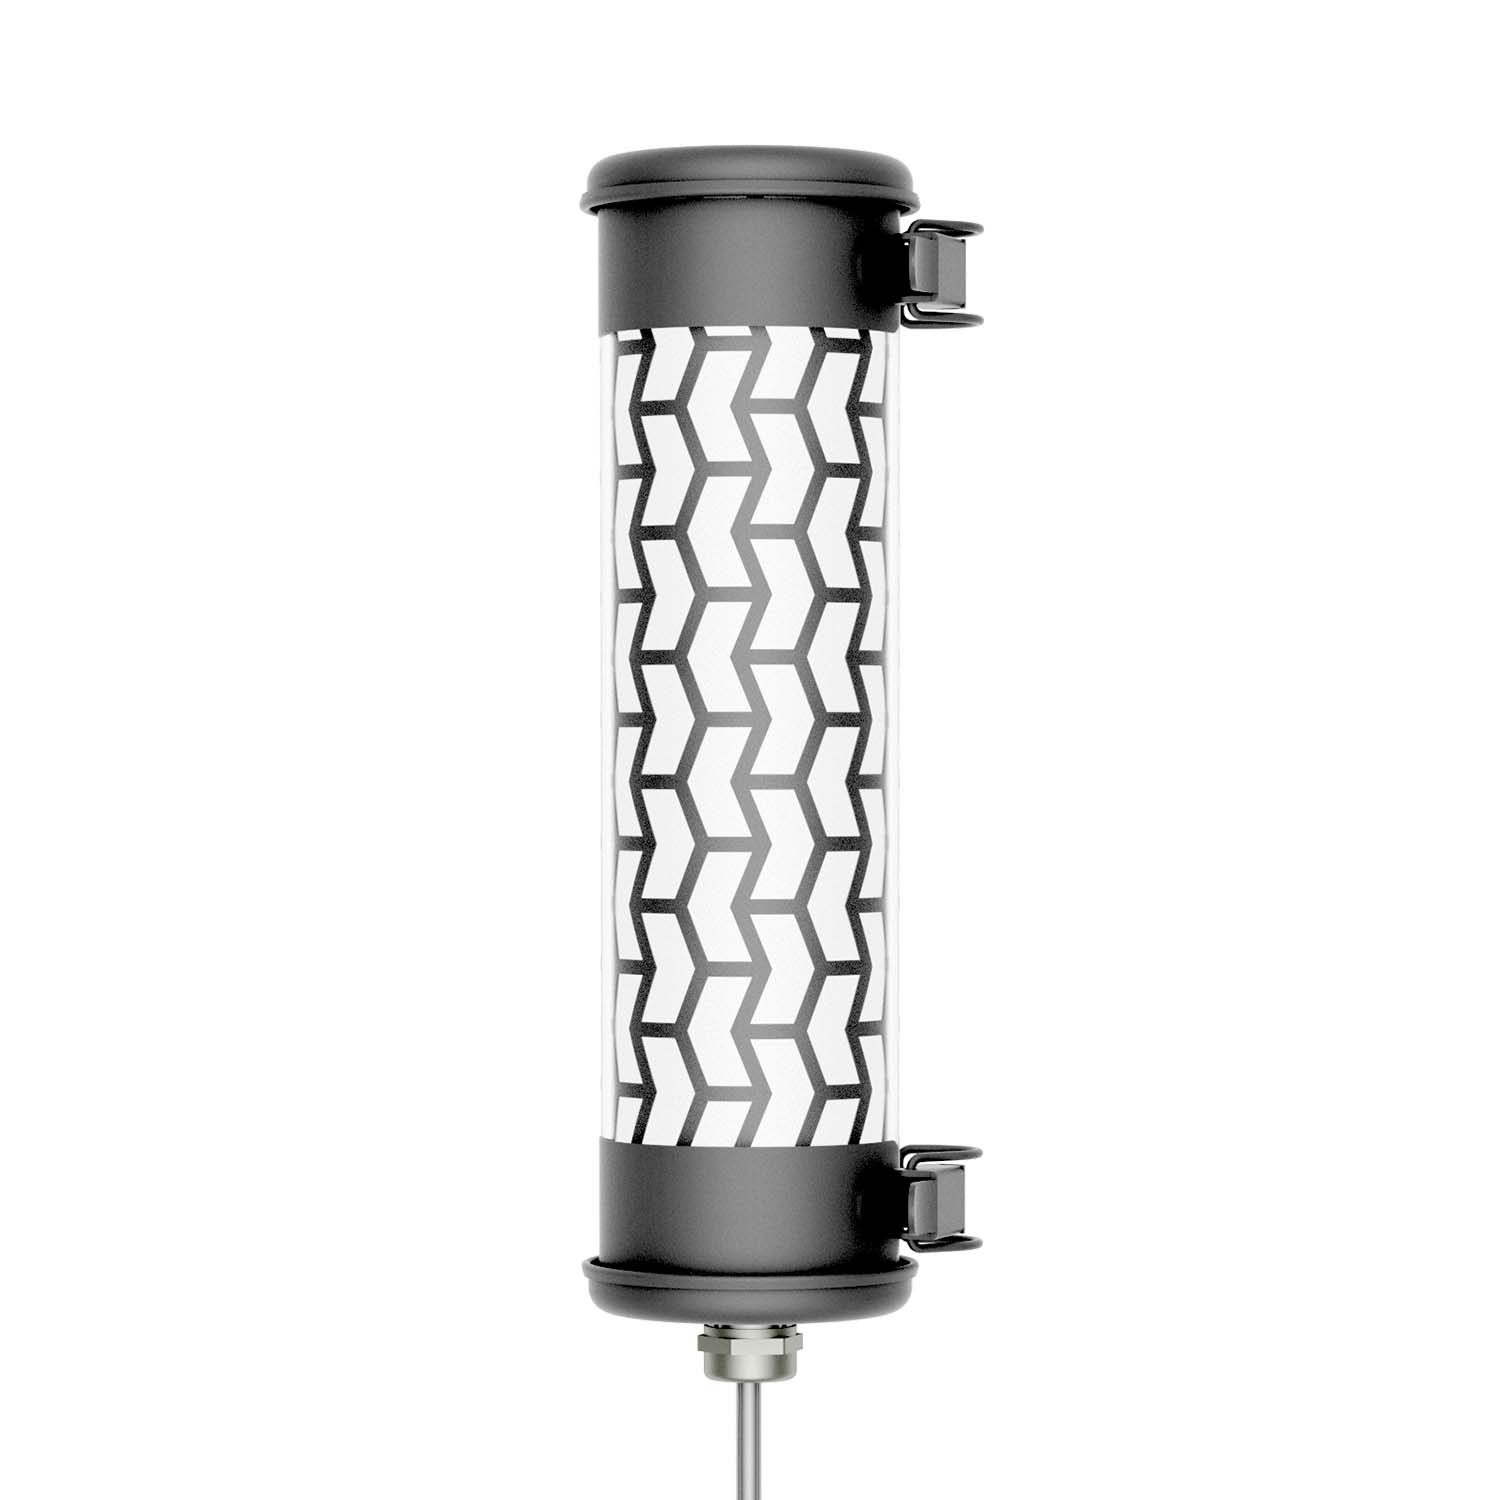 MONCEAU NANO - Black steel waterproof designer tube wall light